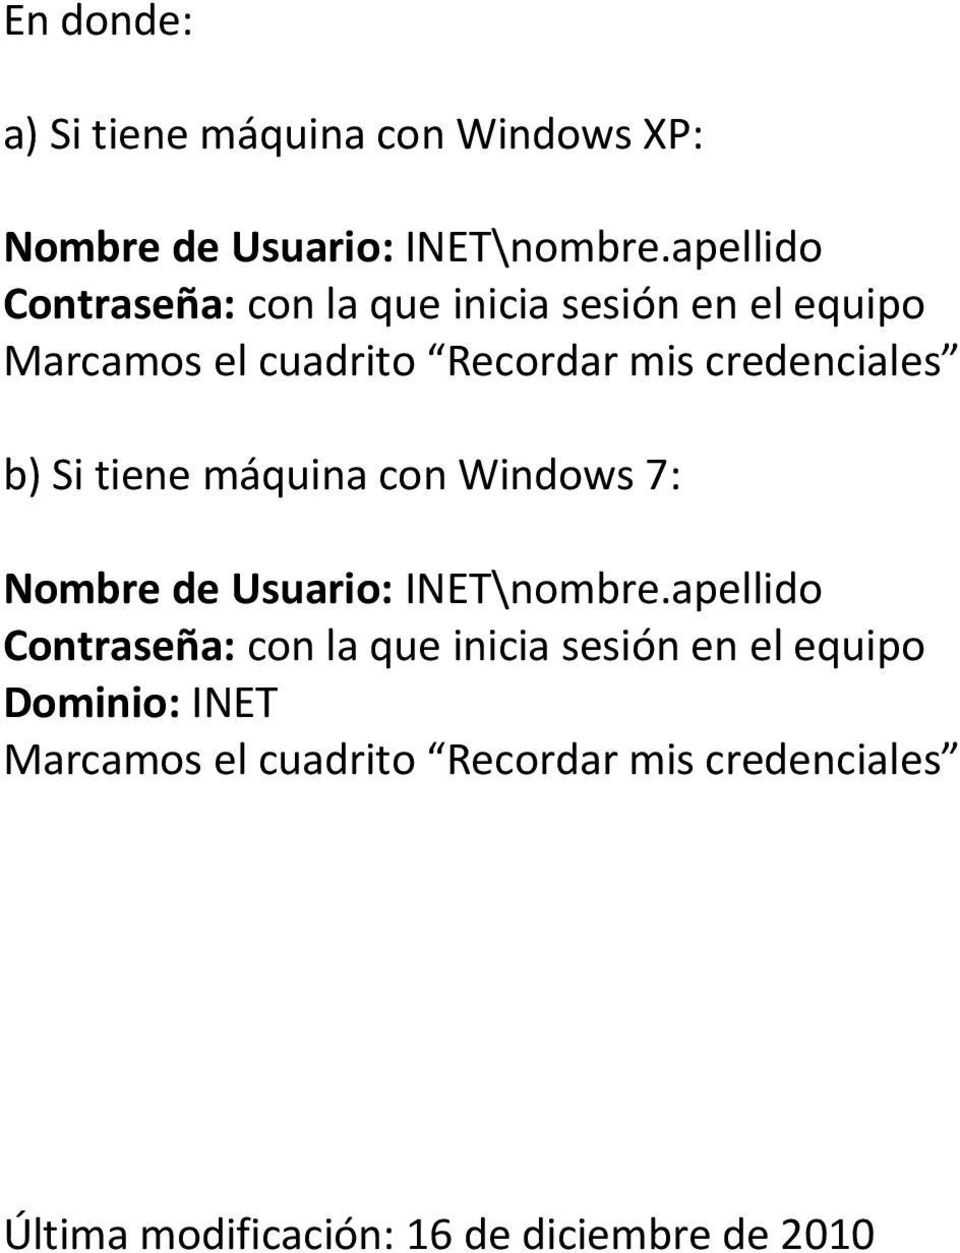 mis credenciales b) Si tiene máquina con Windows 7: Nombre de Usuario: INET\nombre.